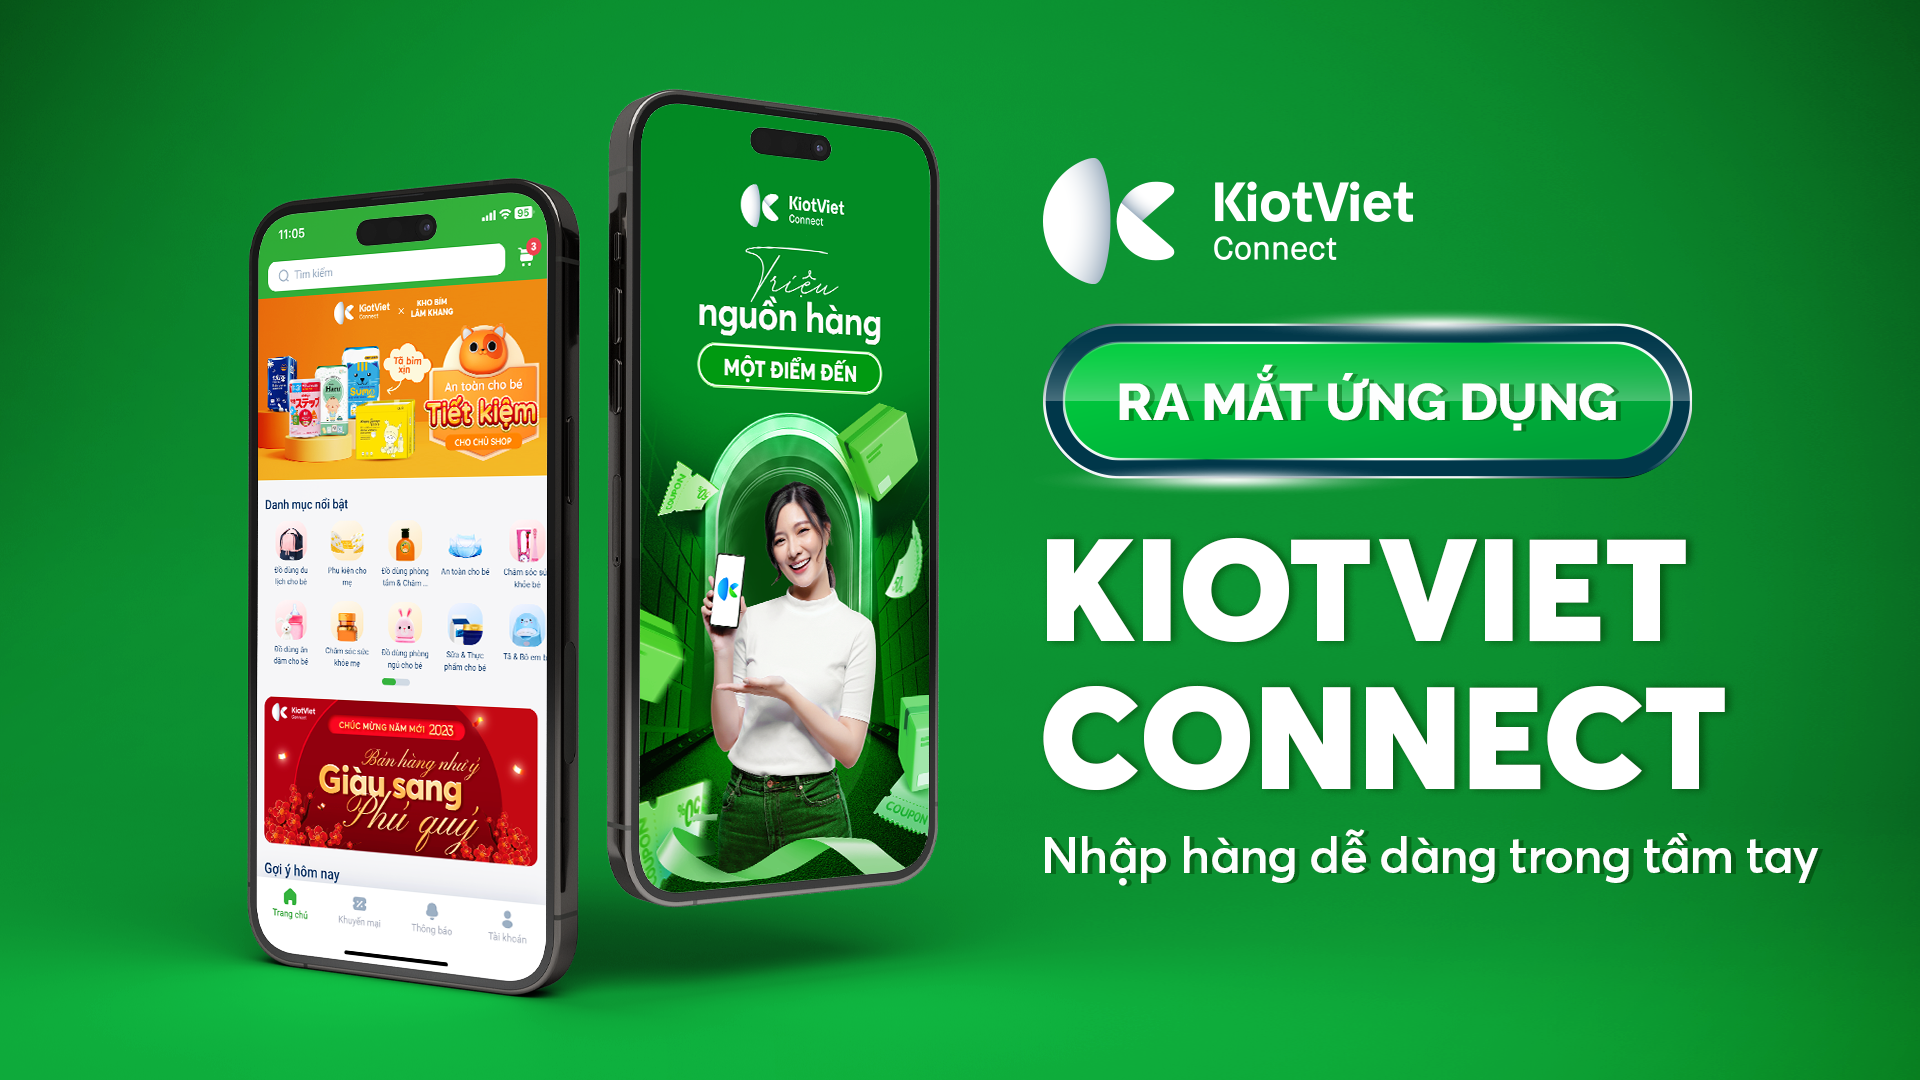 Ra mắt ứng dụng KiotViet Connect – Nhập hàng dễ dàng trong tầm tay